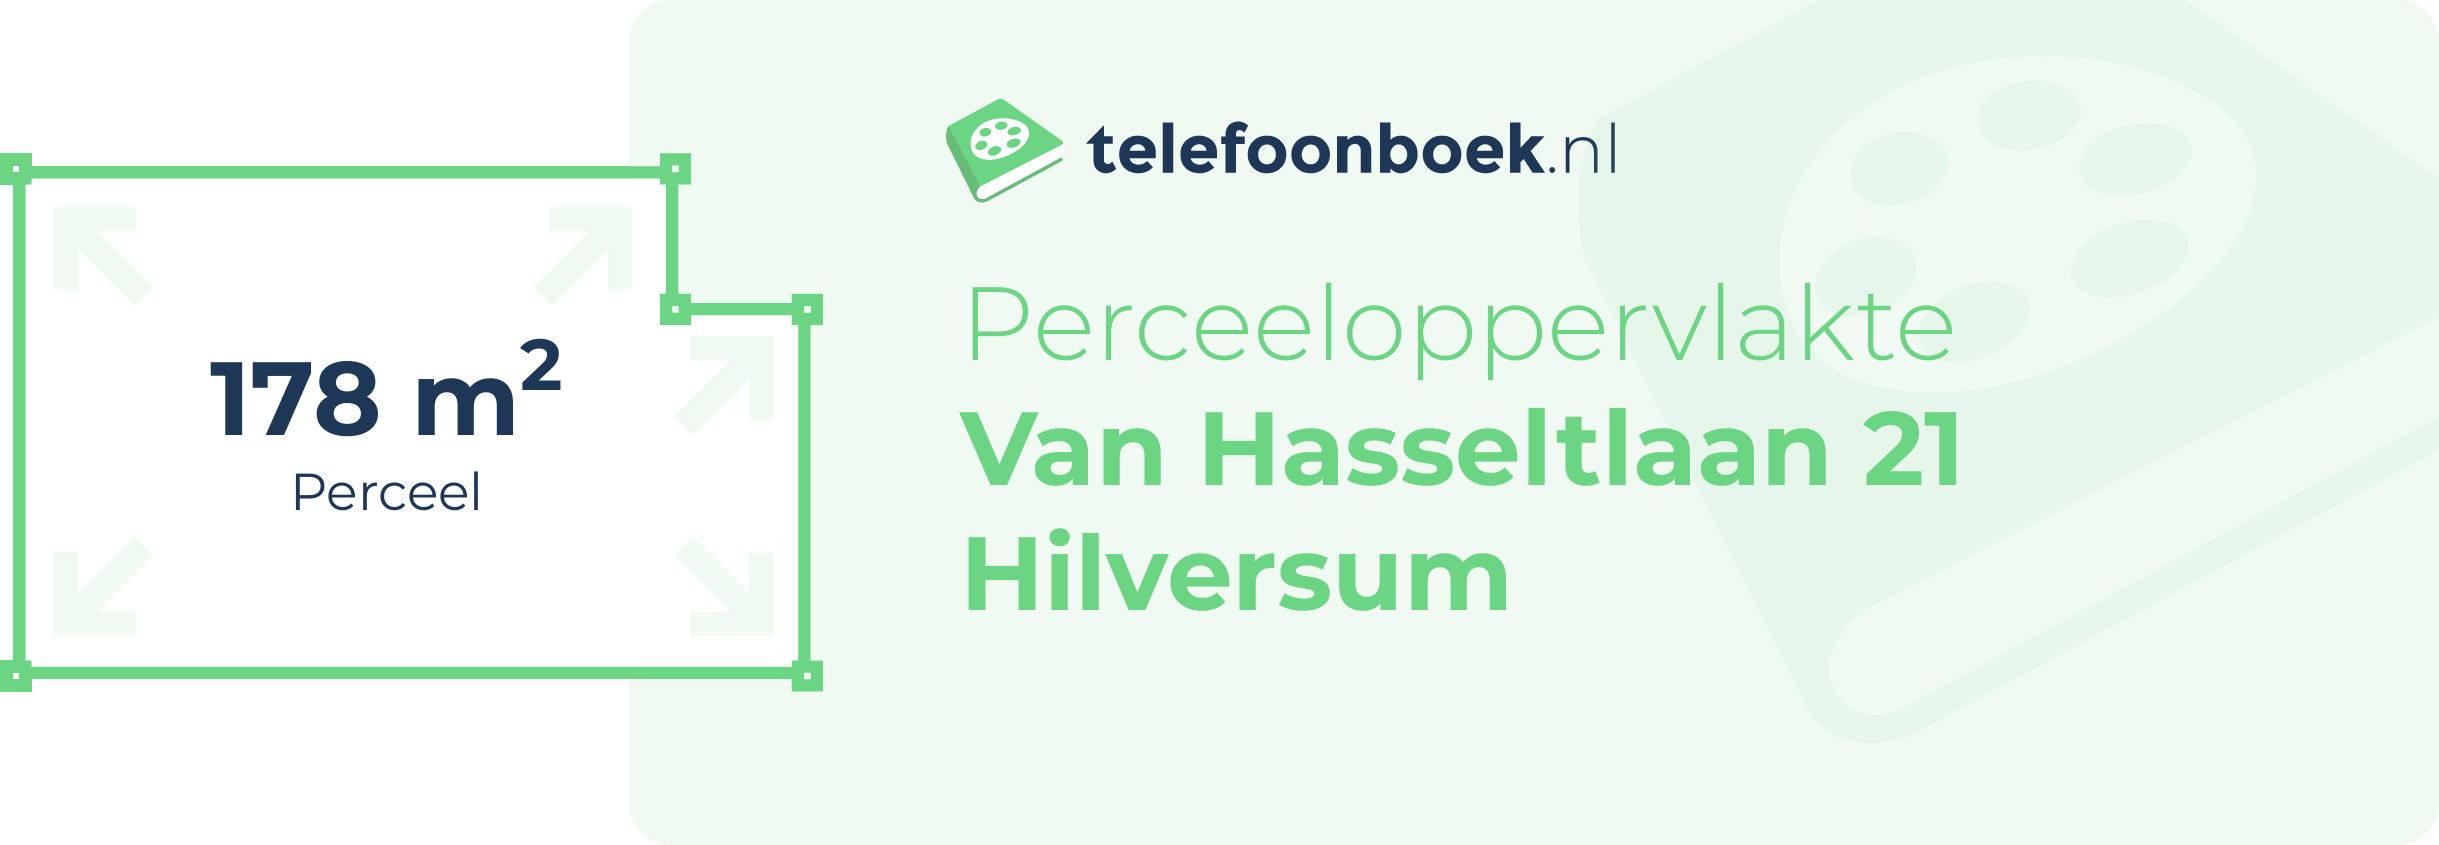 Perceeloppervlakte Van Hasseltlaan 21 Hilversum